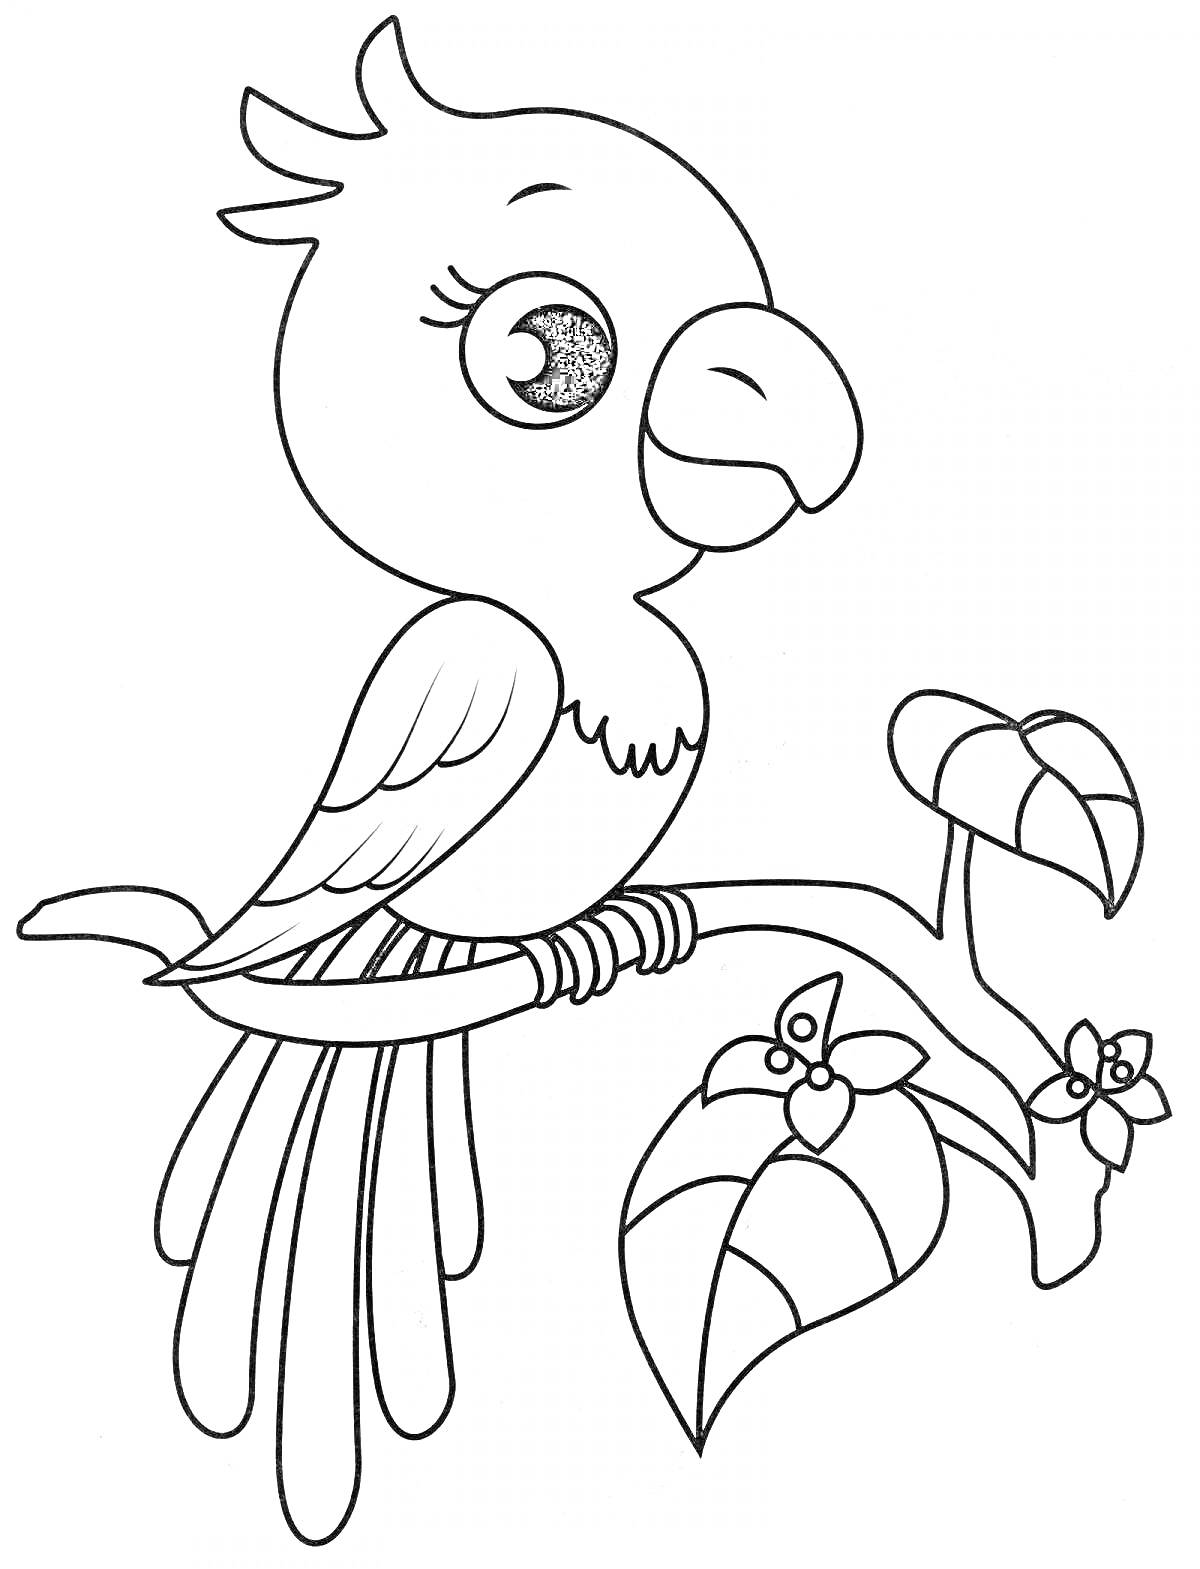 Раскраска Попугай на ветке с листьями и цветами